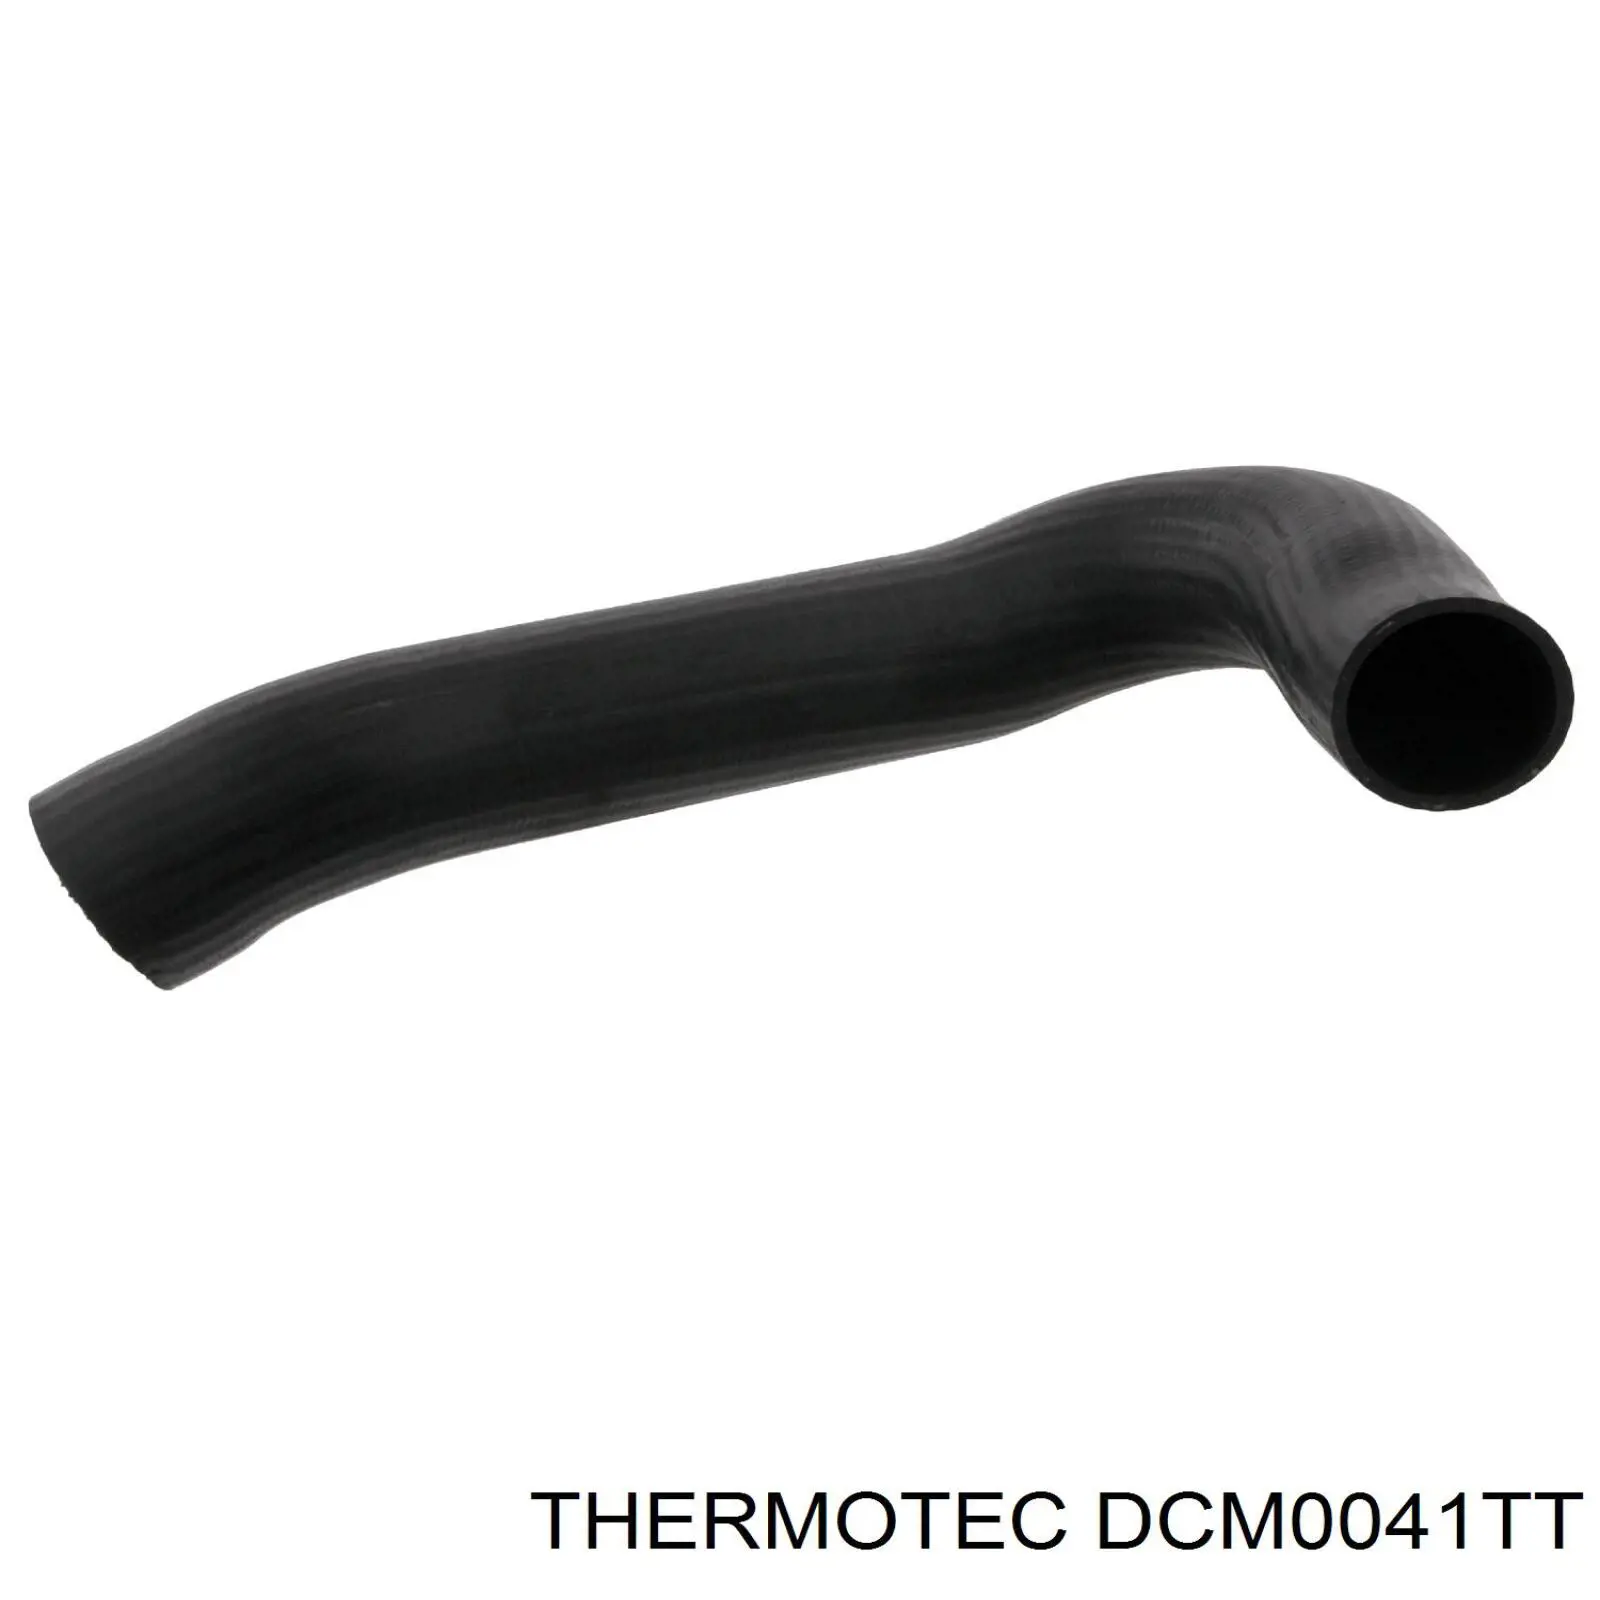 DCM0041TT Thermotec tubo flexible de aspiración, cuerpo mariposa